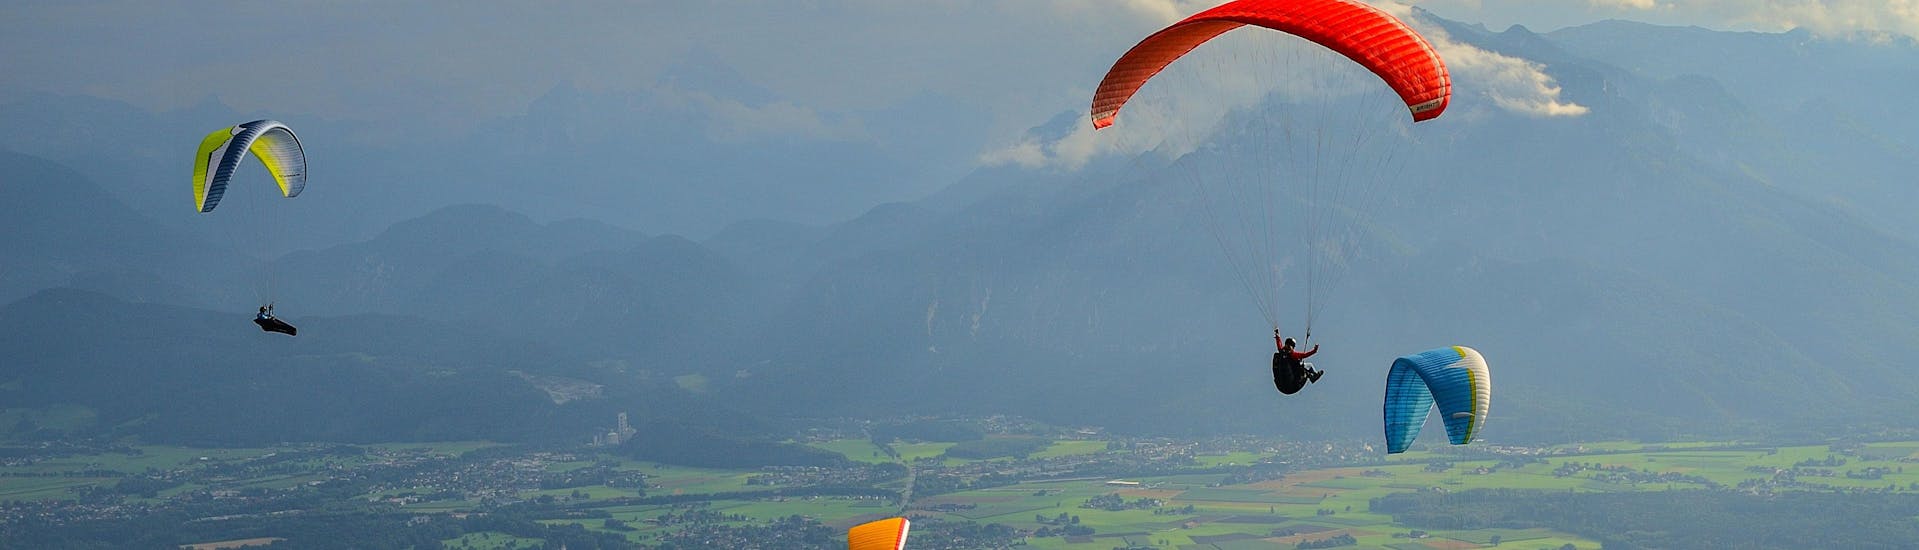 Un parapentiste est émerveillé par le paysage lors d'un vol en parapente biplace dans la célèbre destination de parapente Ville de Salzbourg.